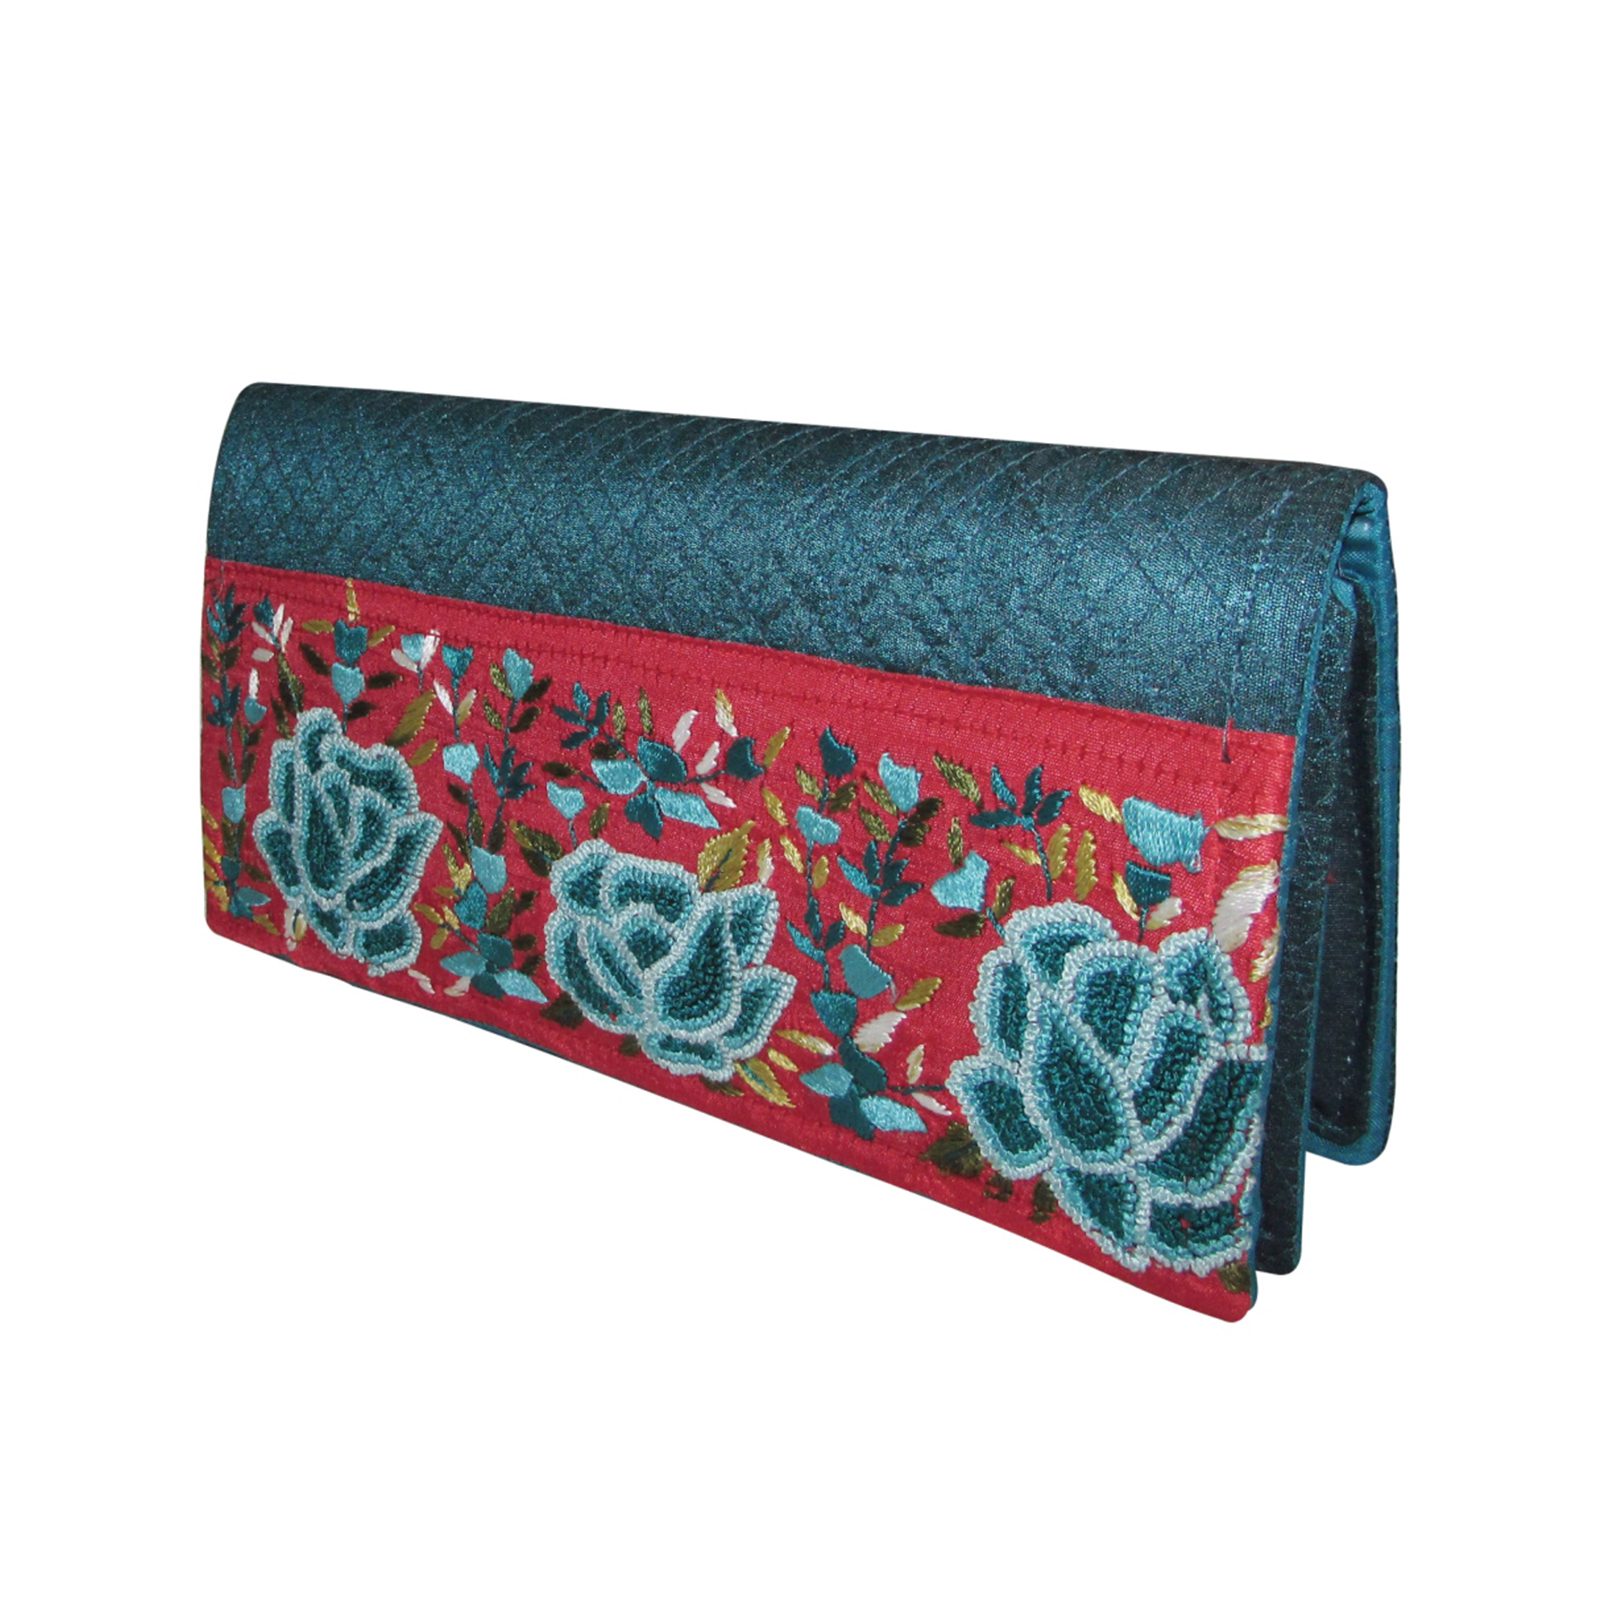 fcity.in - Leather Casual Clutch Wallet Purse Handbag Fancy Trendy Women Box